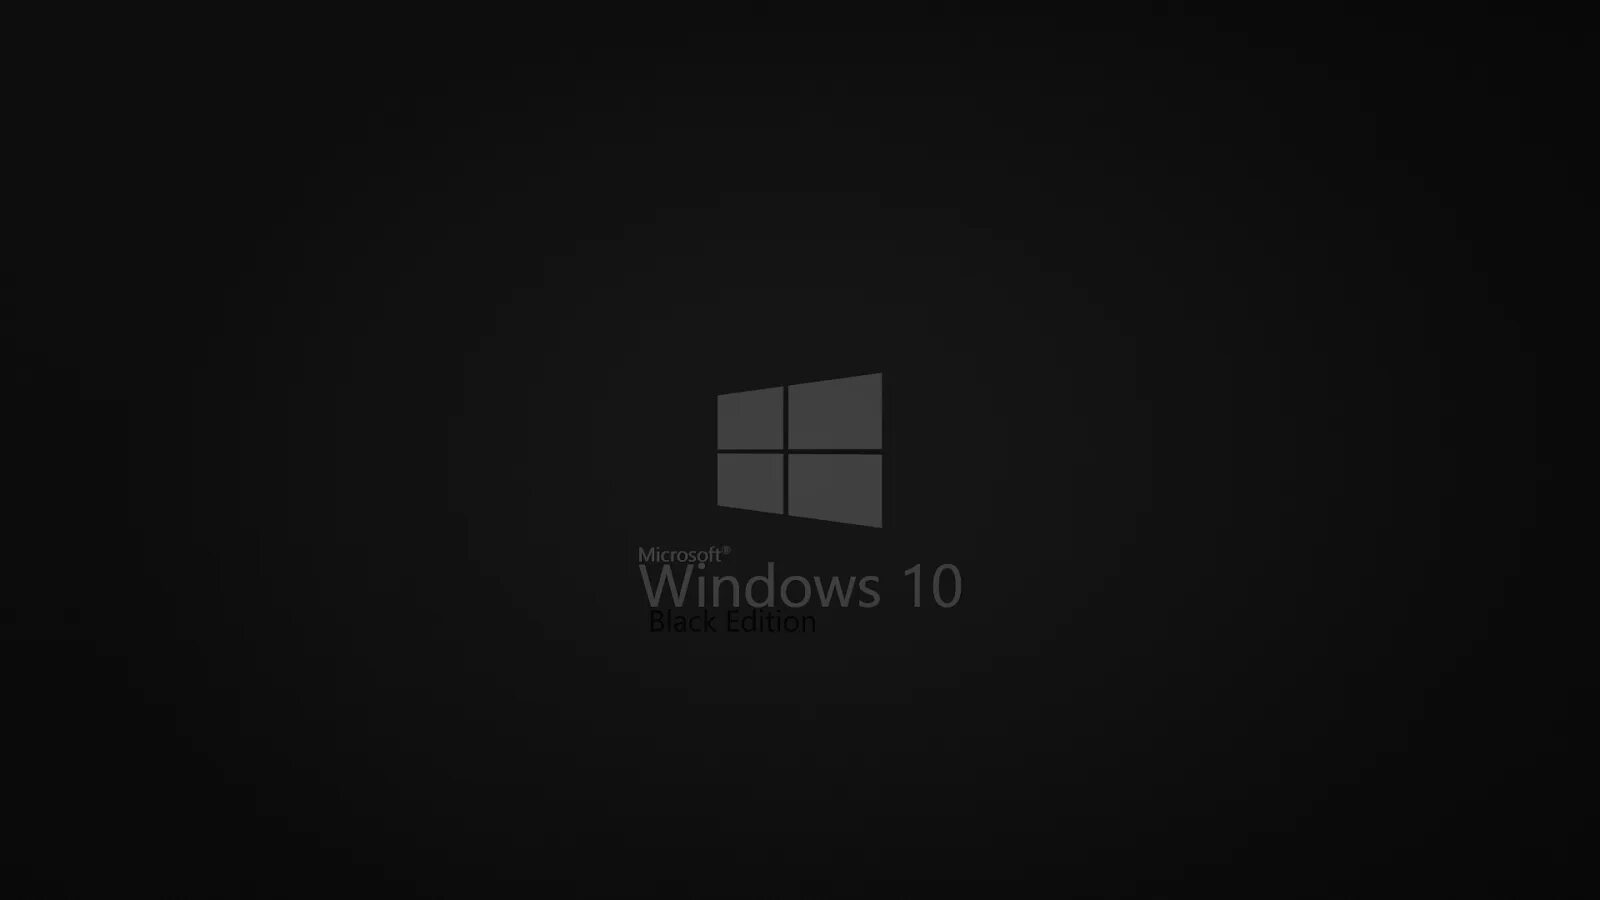 Виндовс 10 Блэк эдишн. Темные обои Windows. Заставка Windows 10 темная. Чёрный рабочий стол Windows 10.